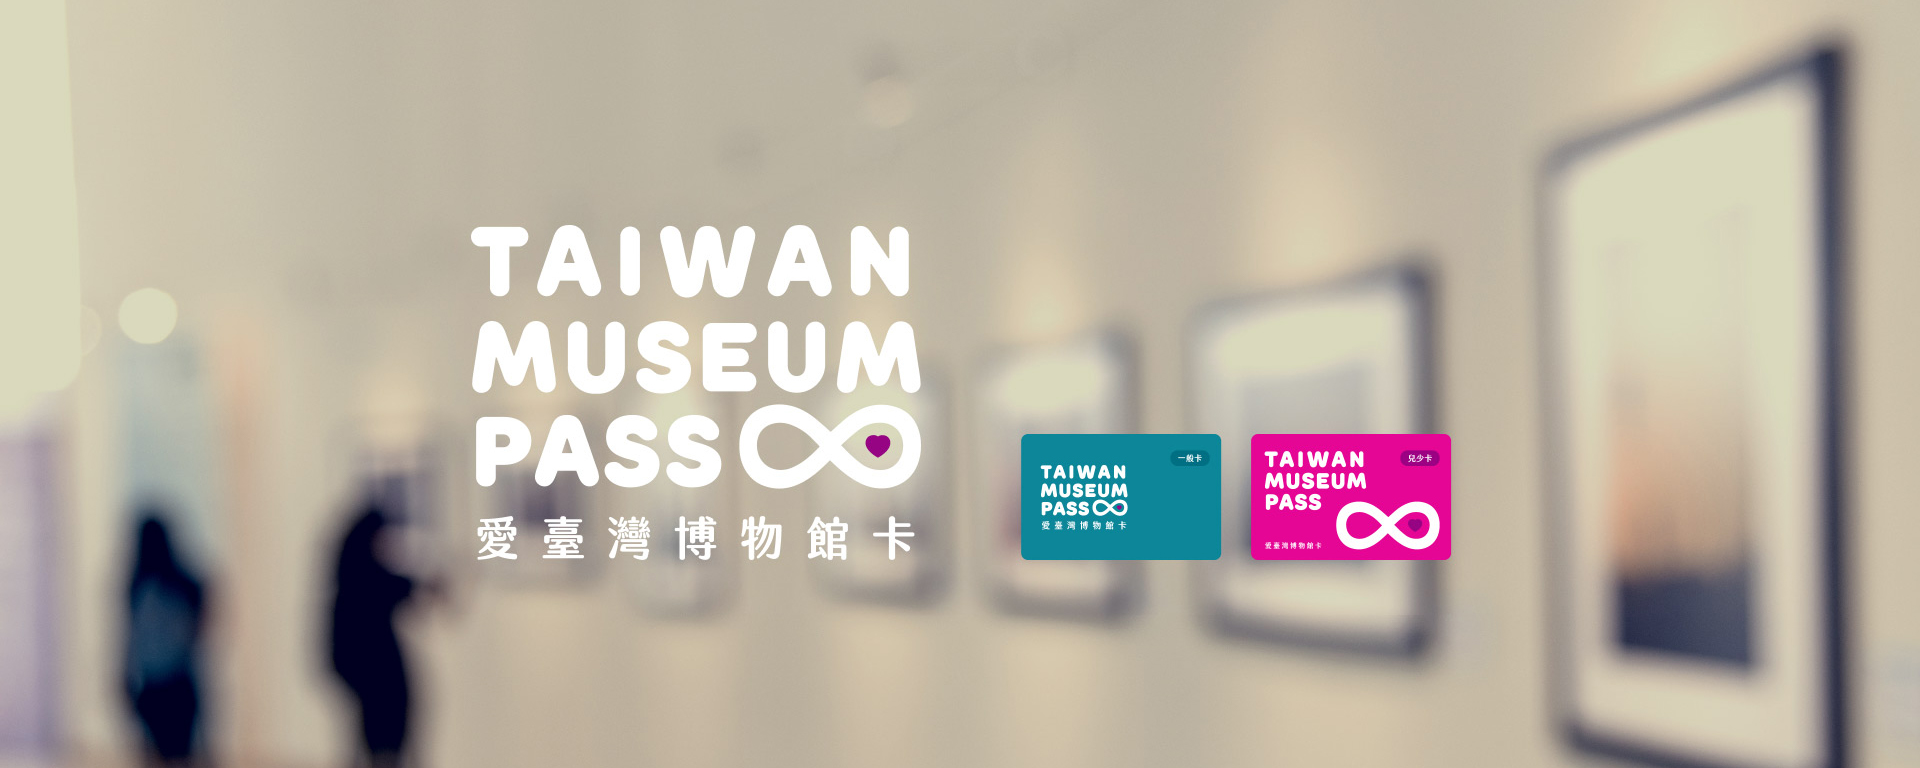 [情報] 愛台灣博物卡 加碼免費遊學活動